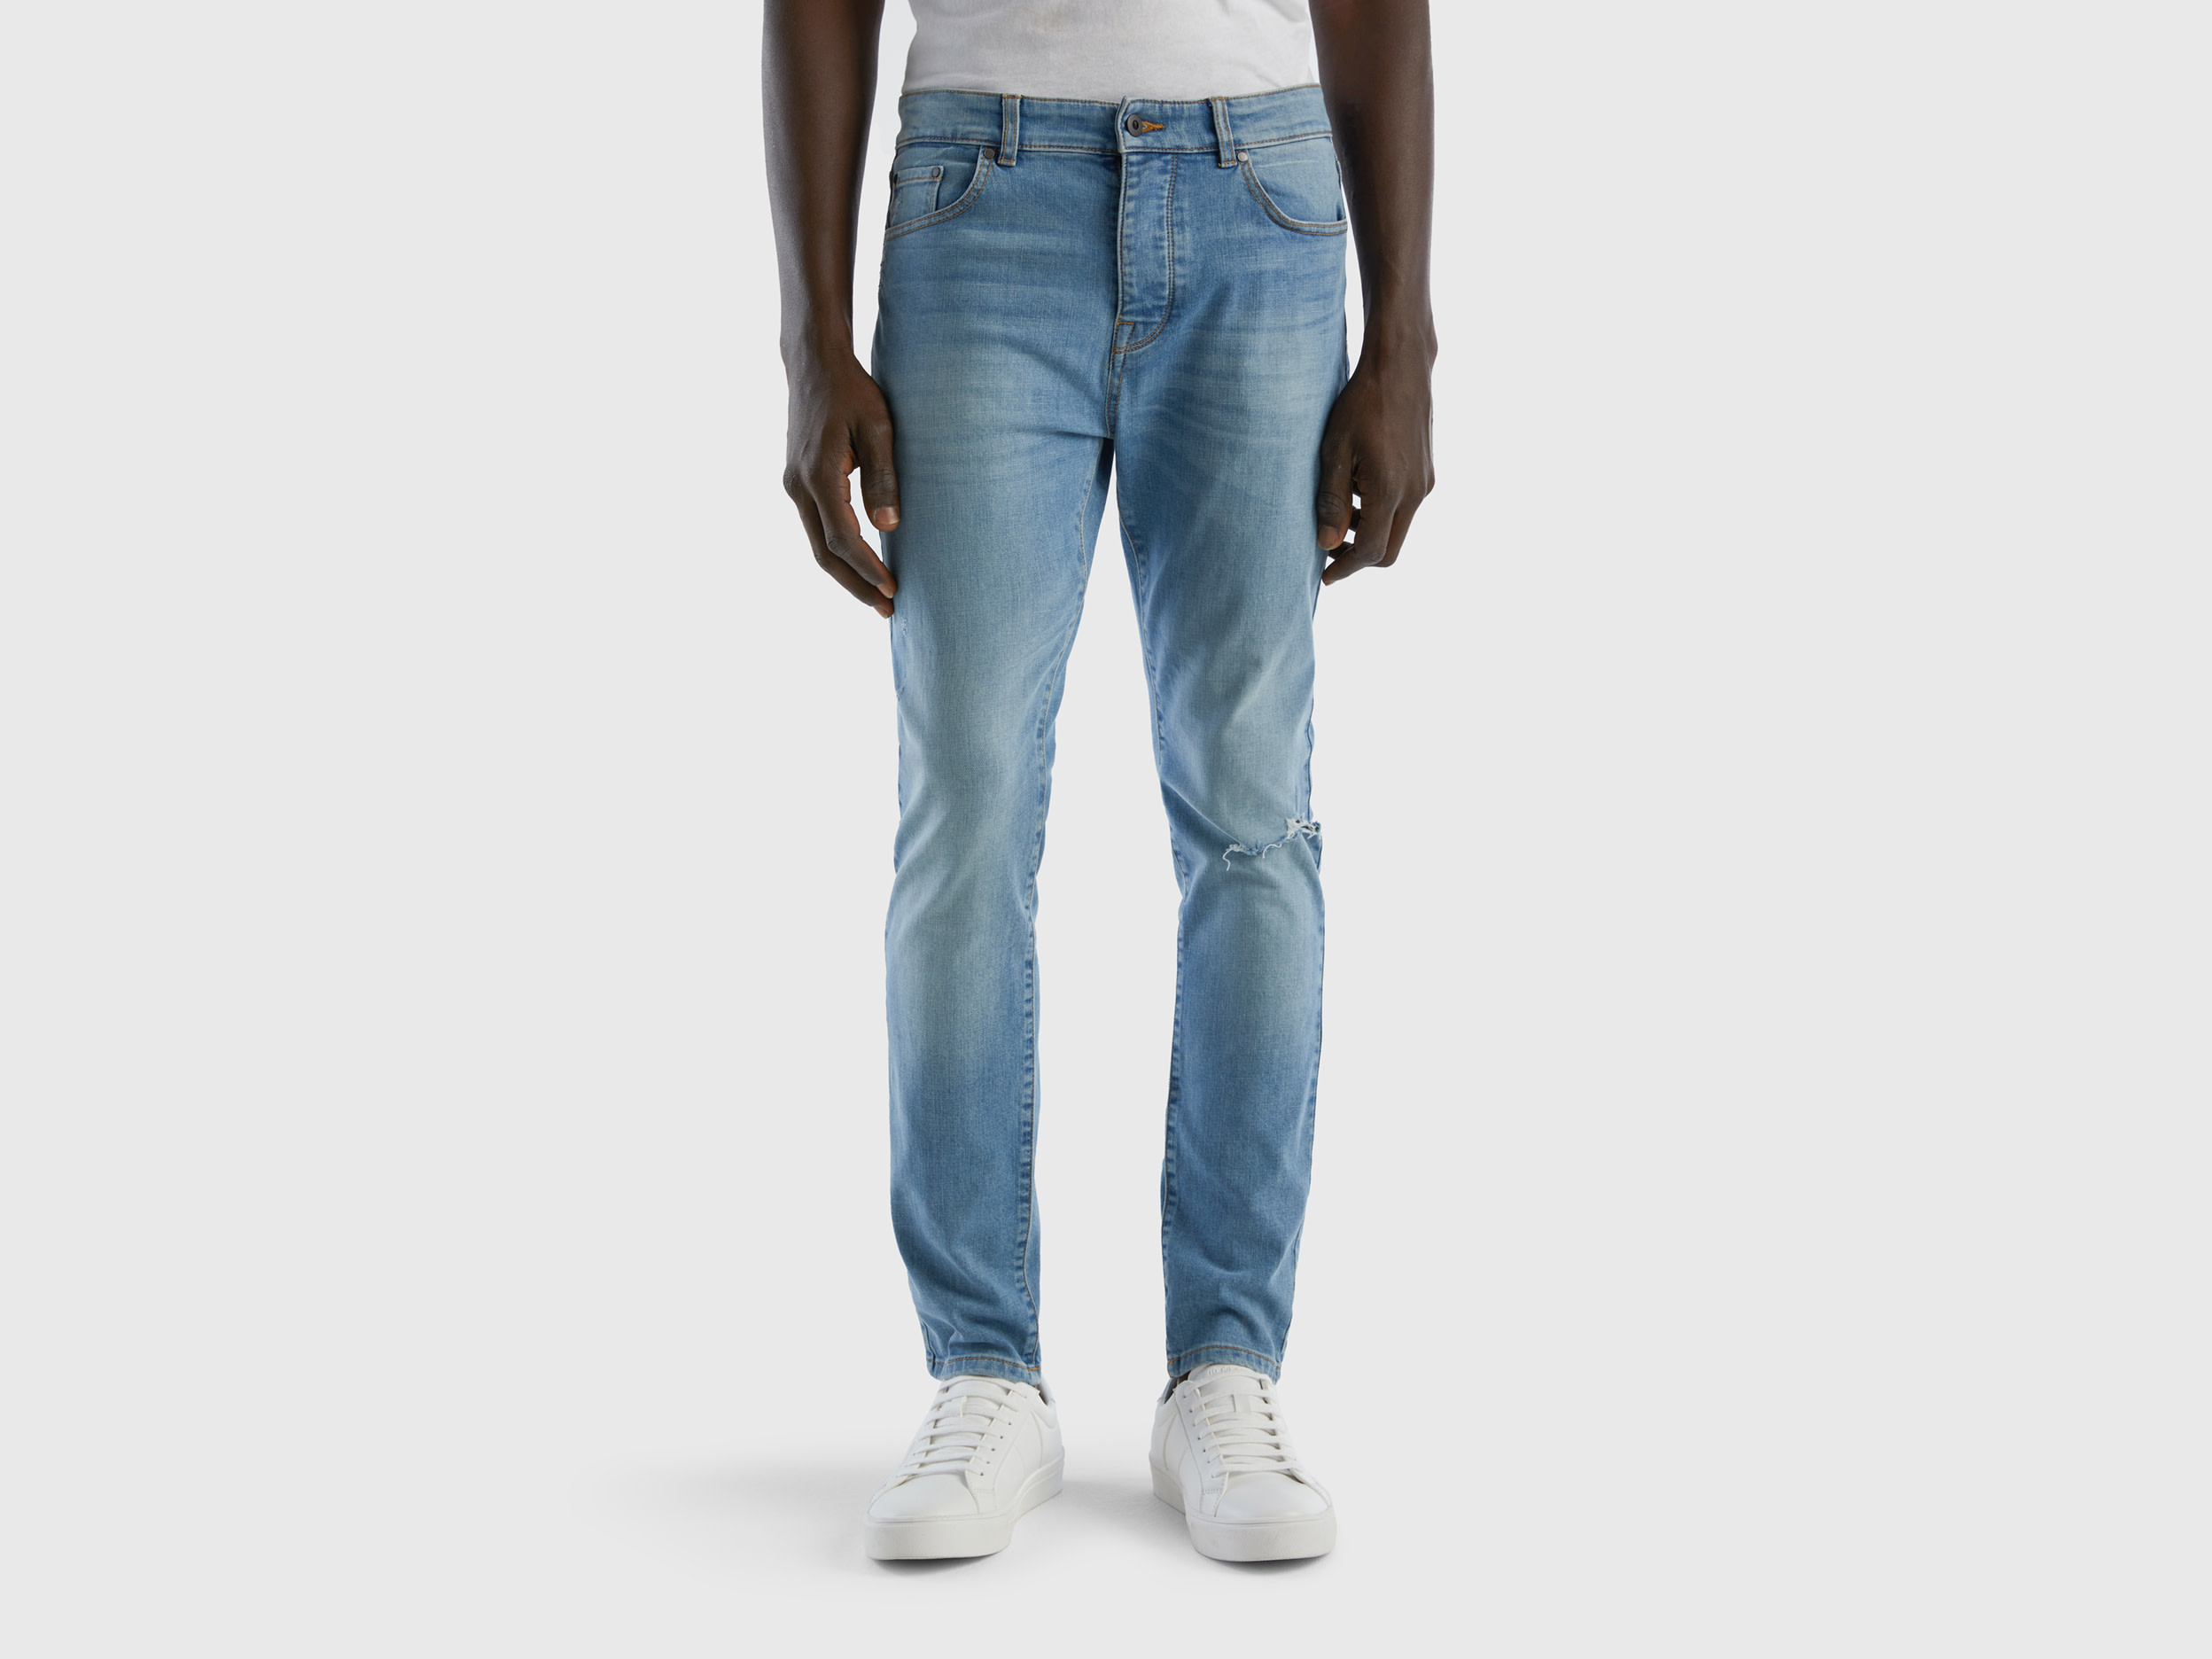 Benetton, Skinny Fit Jeans, size 29, Blue, Men